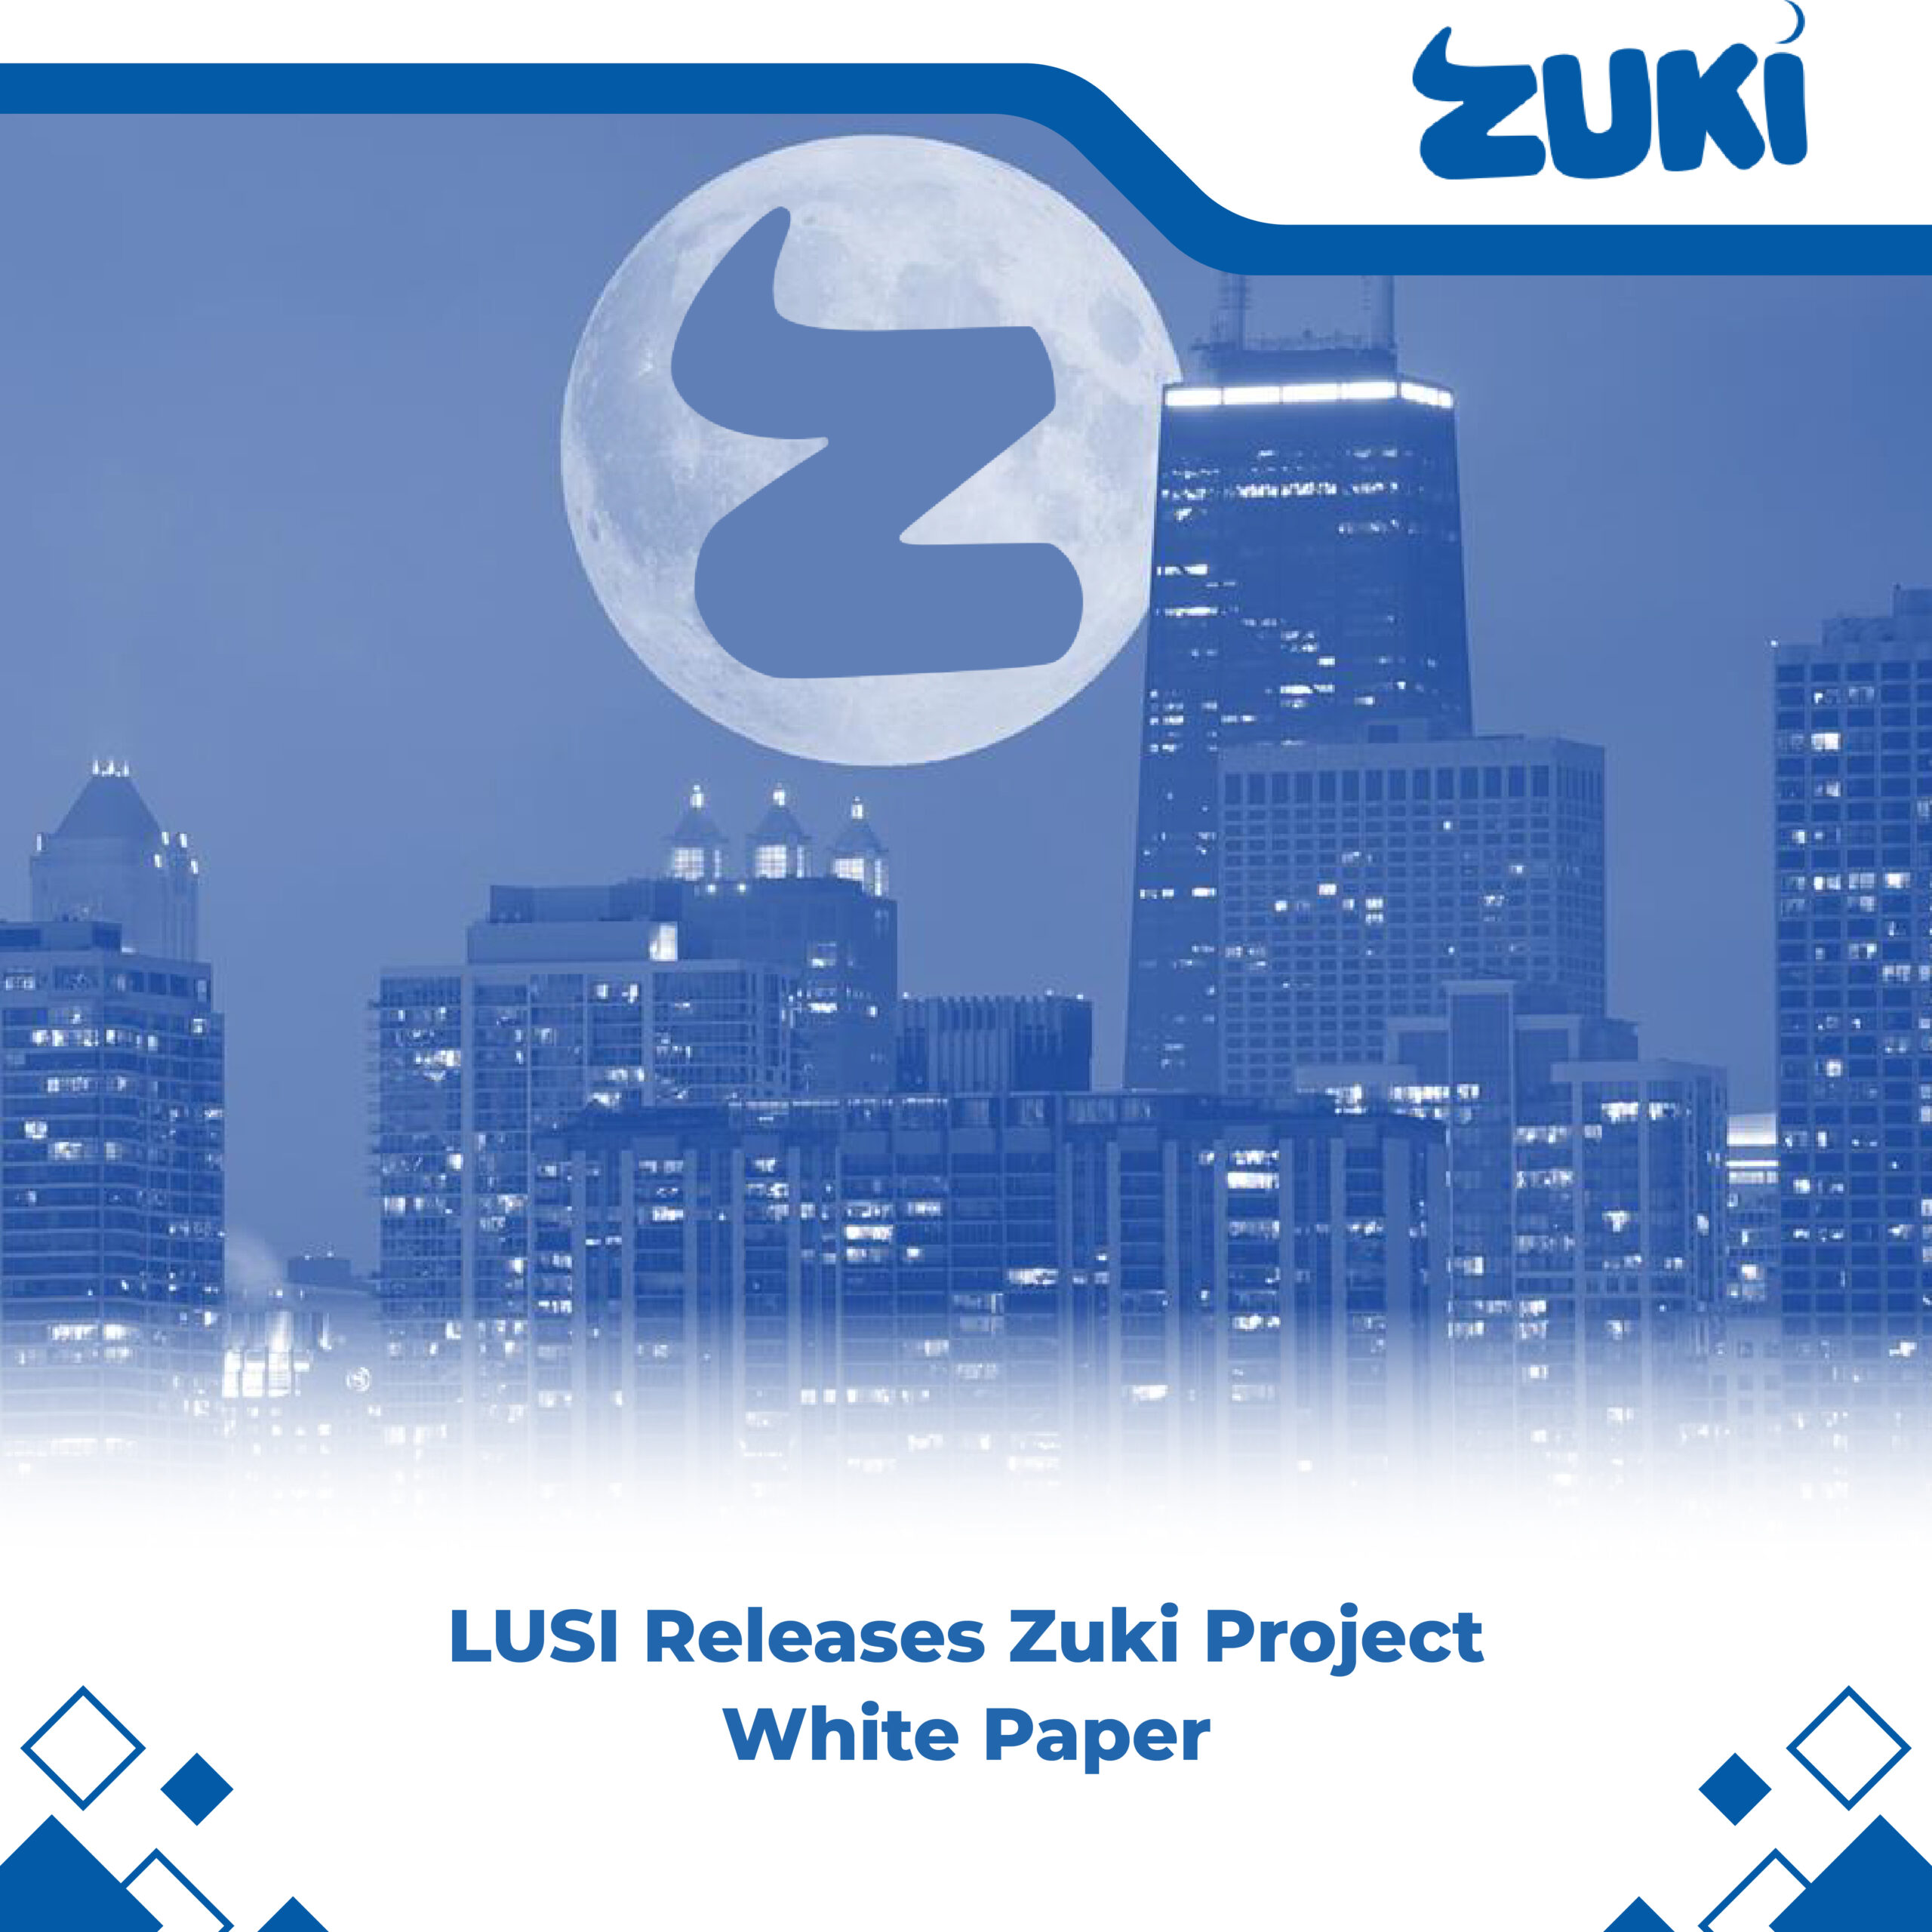 LUSI’s Zuki Project White Paper